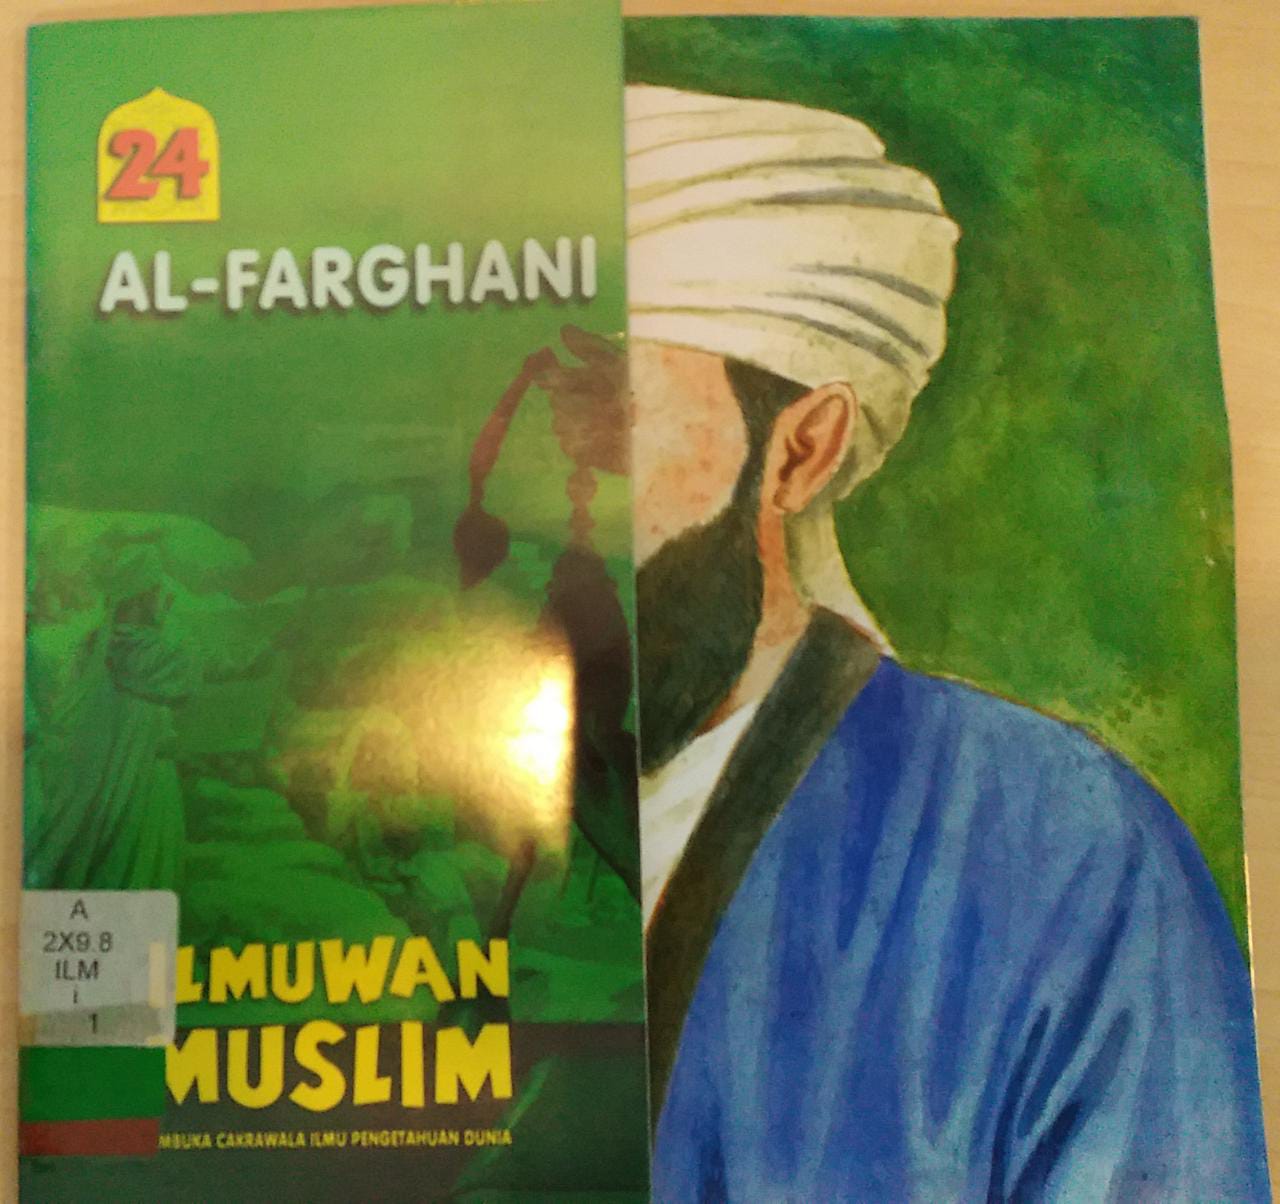 ILMUWAN Muslim Pembuka Cakrawala Ilmu Pengetahuan Dunia Jilid 24 :  Al-Farghani